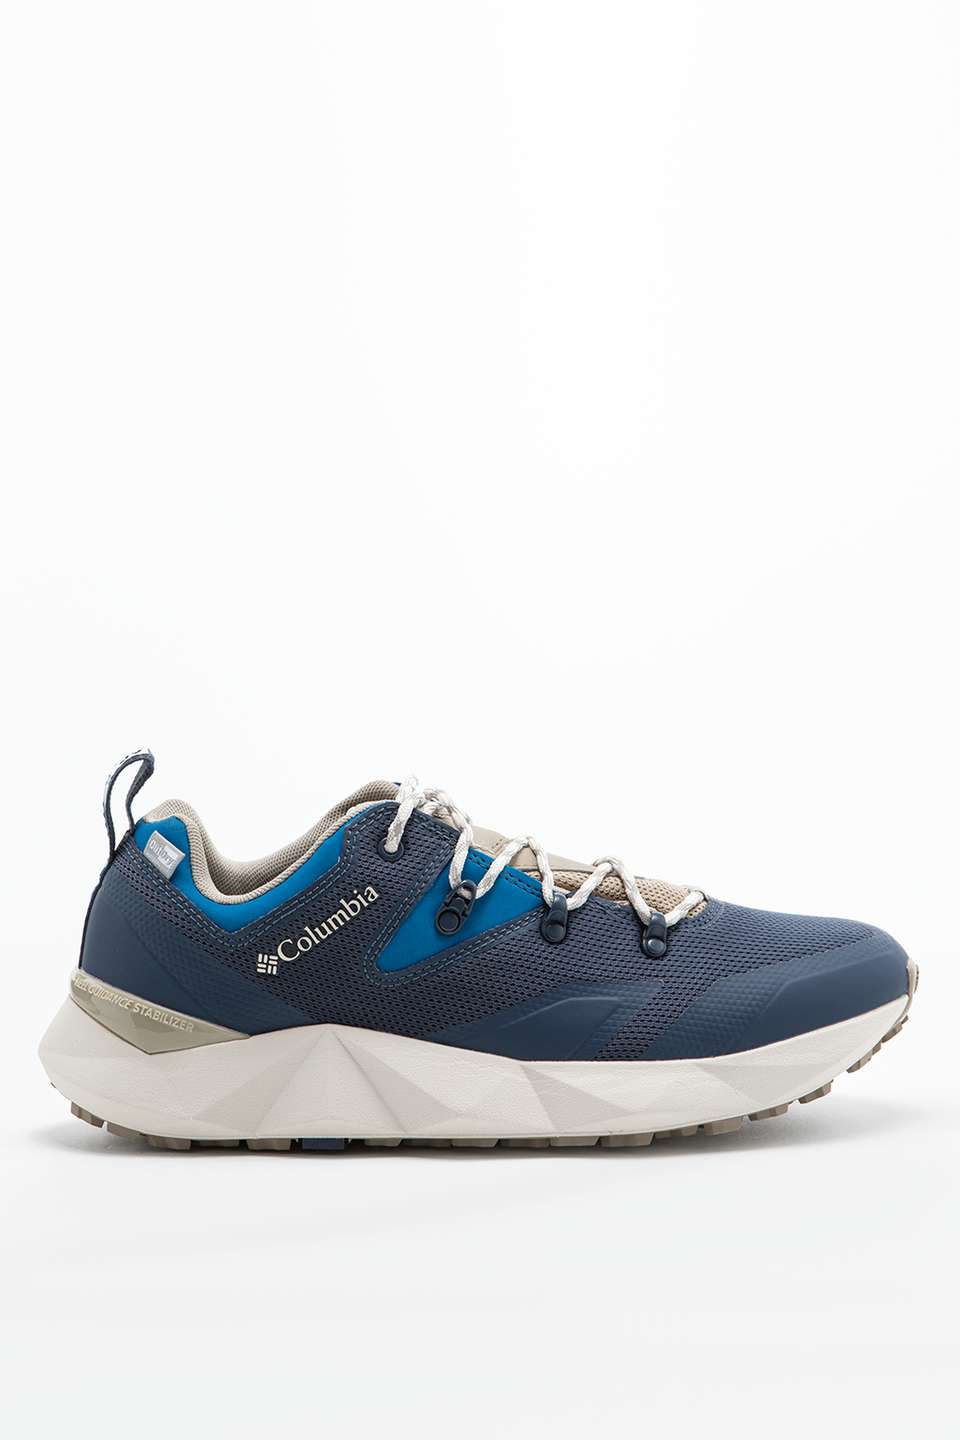 נעלי טיולים קולומביה לגברים Columbia Facet 60 low outdry - כחול